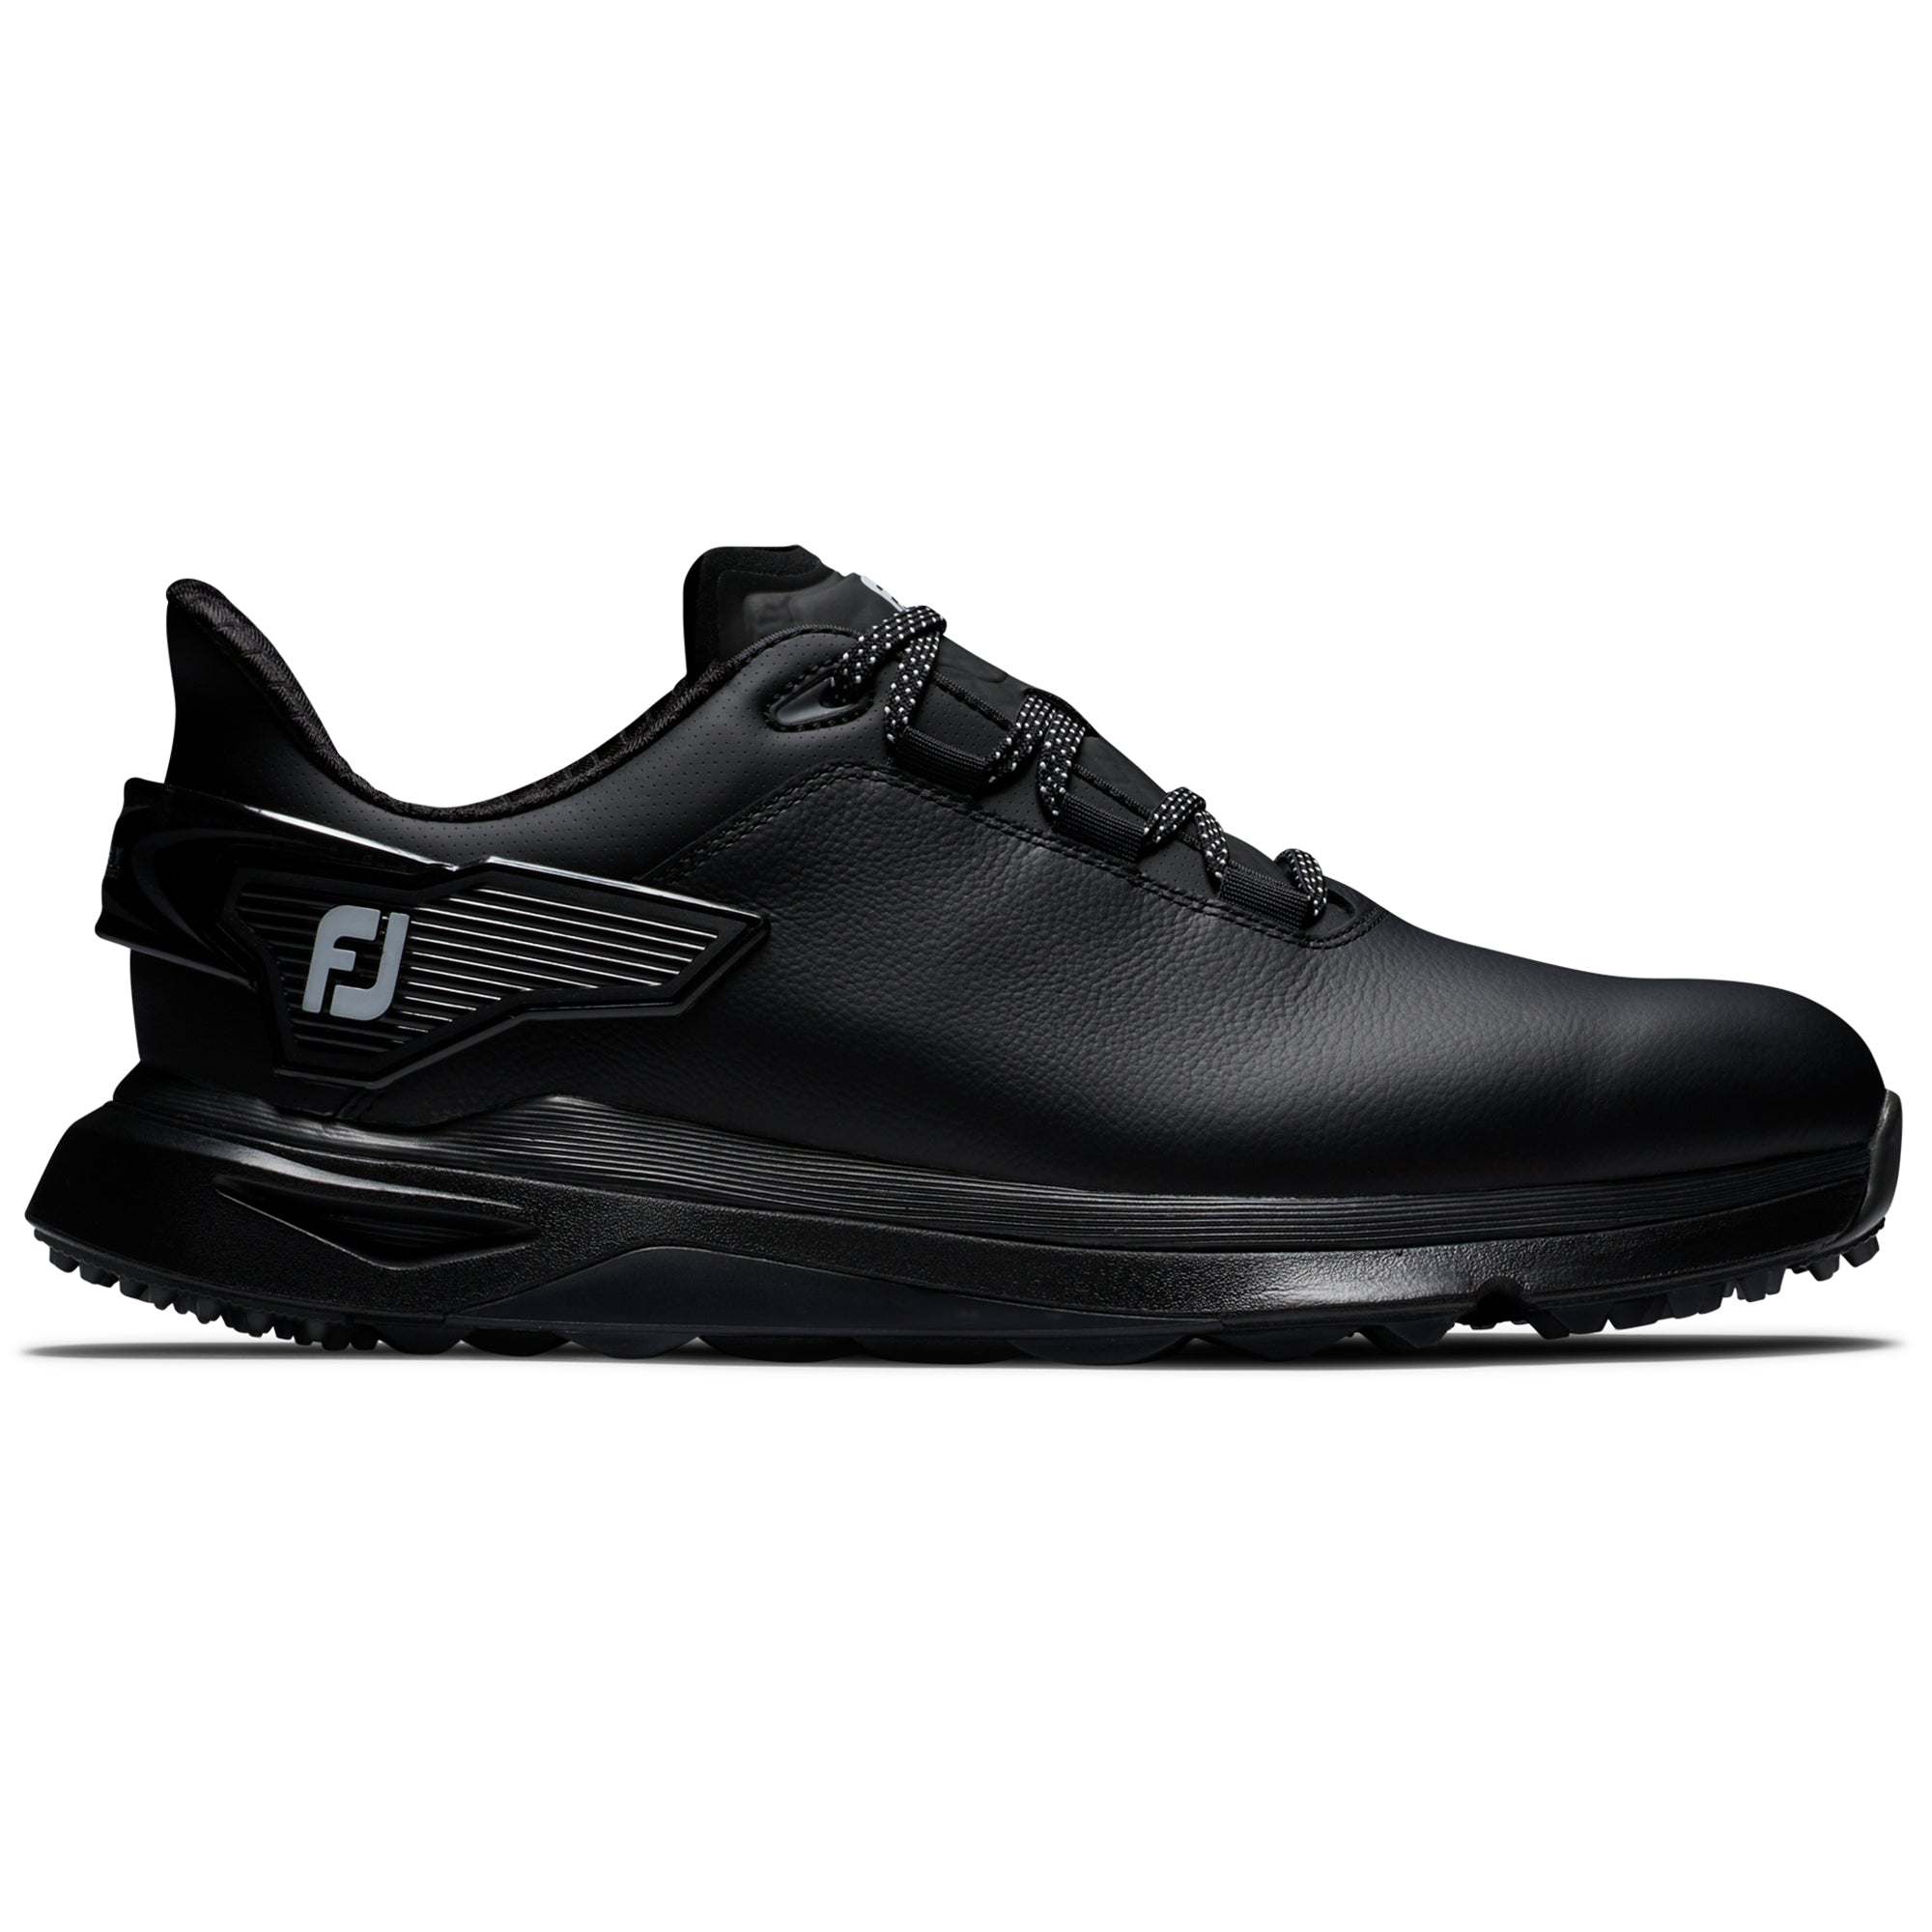 footjoy-pro-slx-carbon-golf-shoes-56917-black